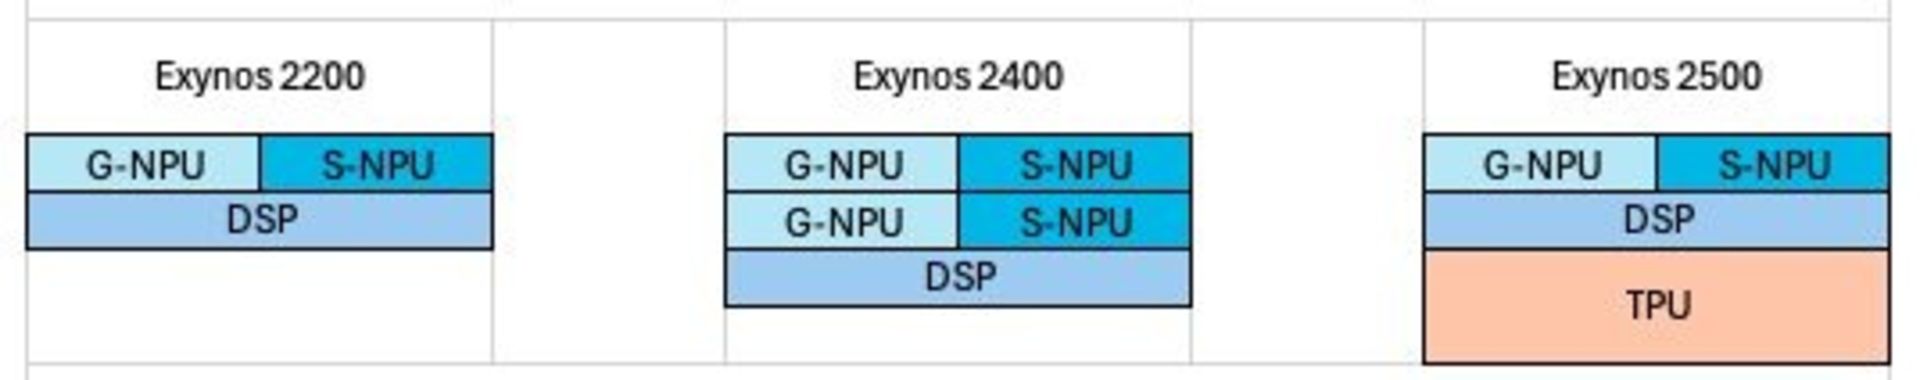 تفاوت واحدها در اگزینوس ۲۲۰۰ و ۲۴۰۰ و ۲۵۰۰